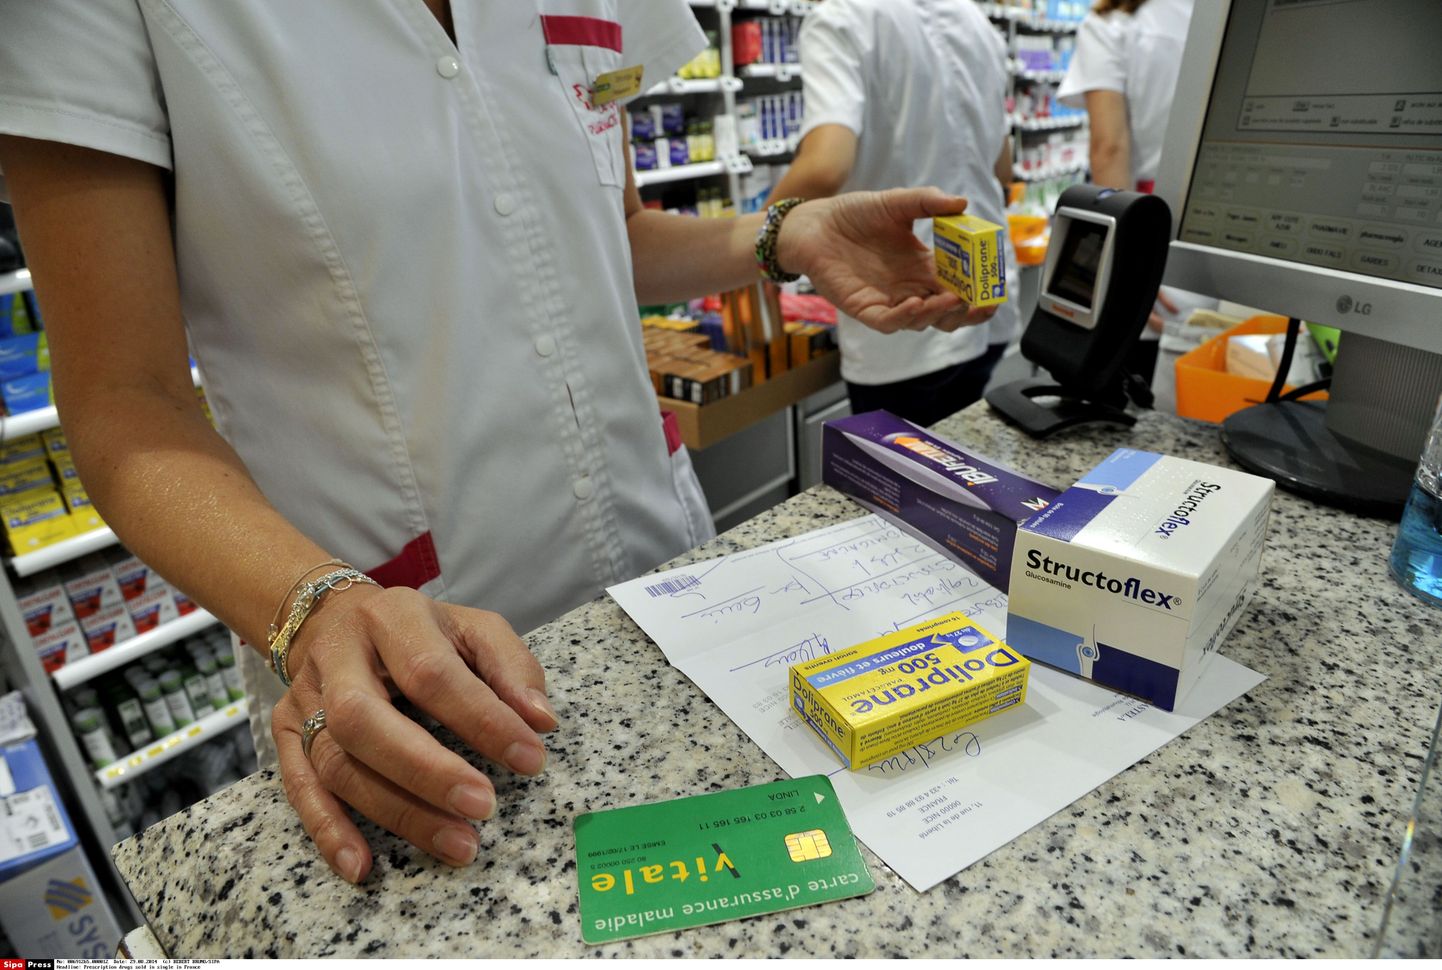 Apteekrid pooldavad apteekide omandipiirangu kehtestamine.